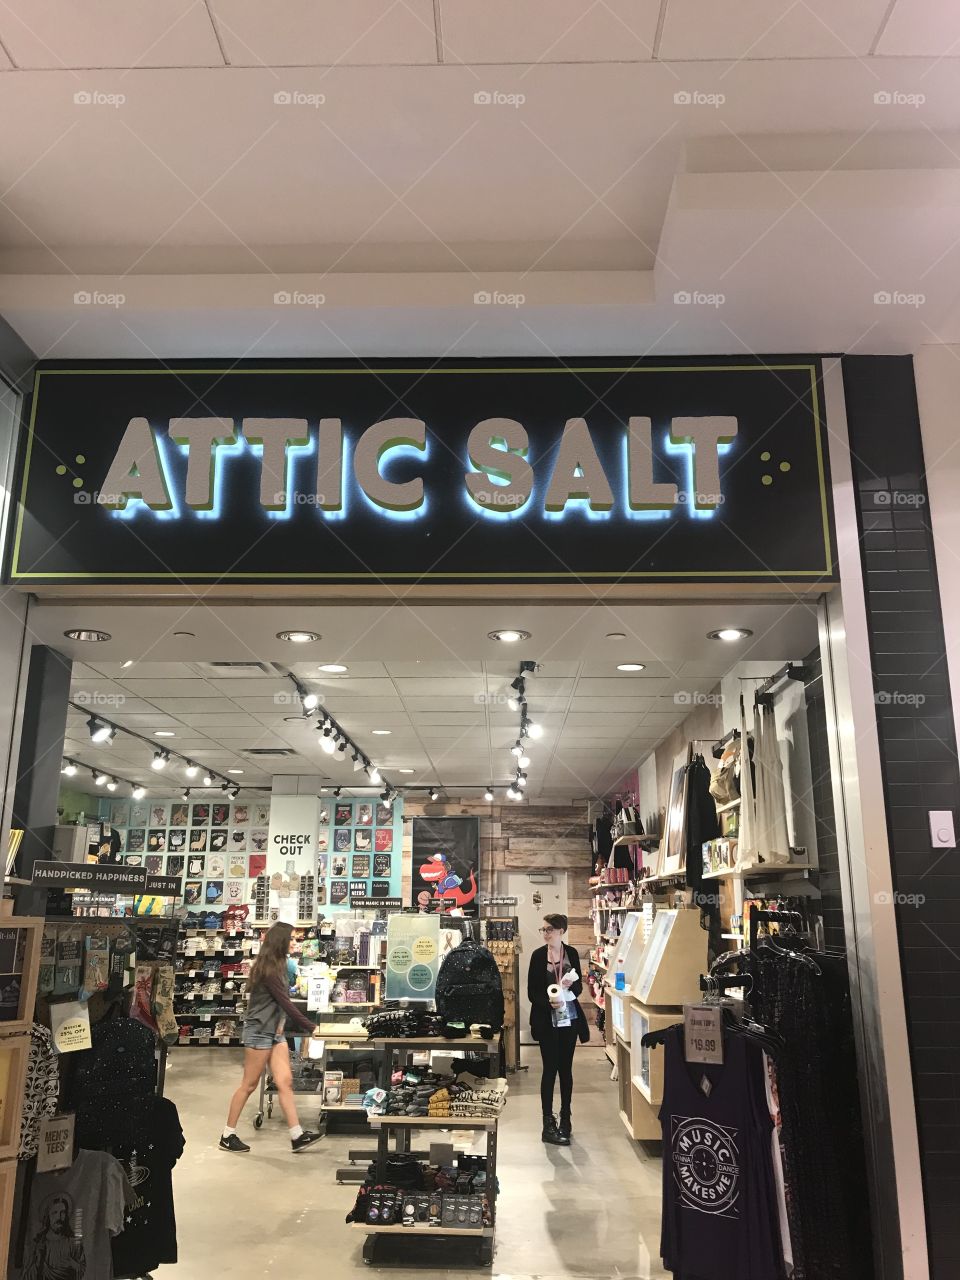 Attic Salt at the mall